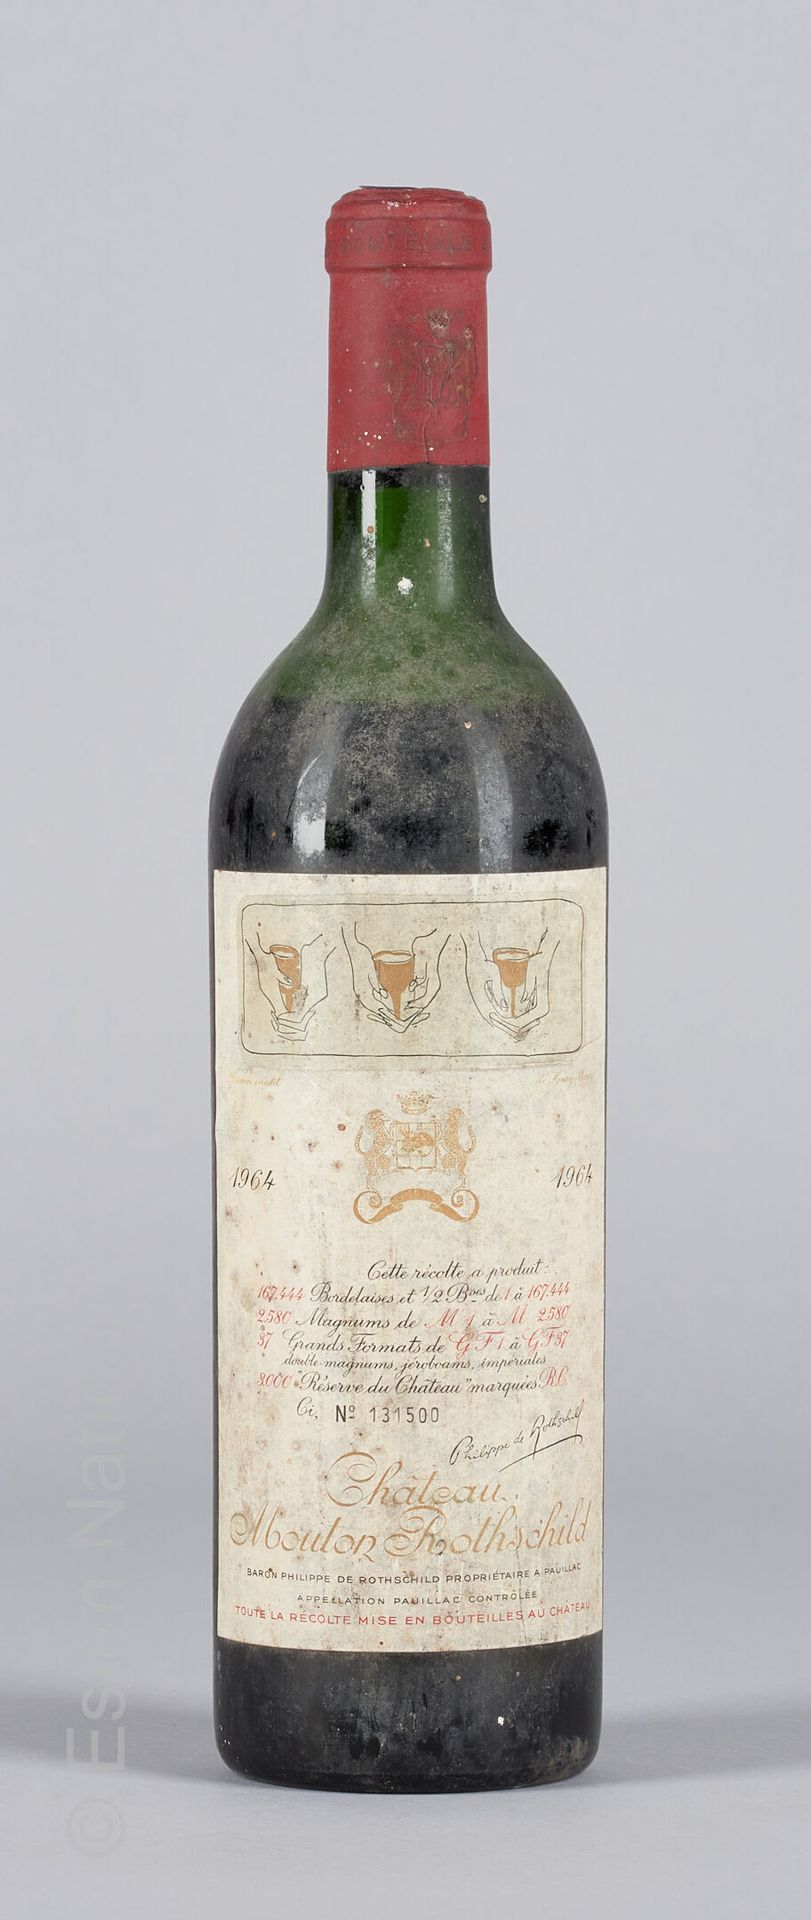 BORDEAUX 1 bottle Château Mouton Rothschild 1964 1er GCC Pauillac

(N. Me, E. A,&hellip;